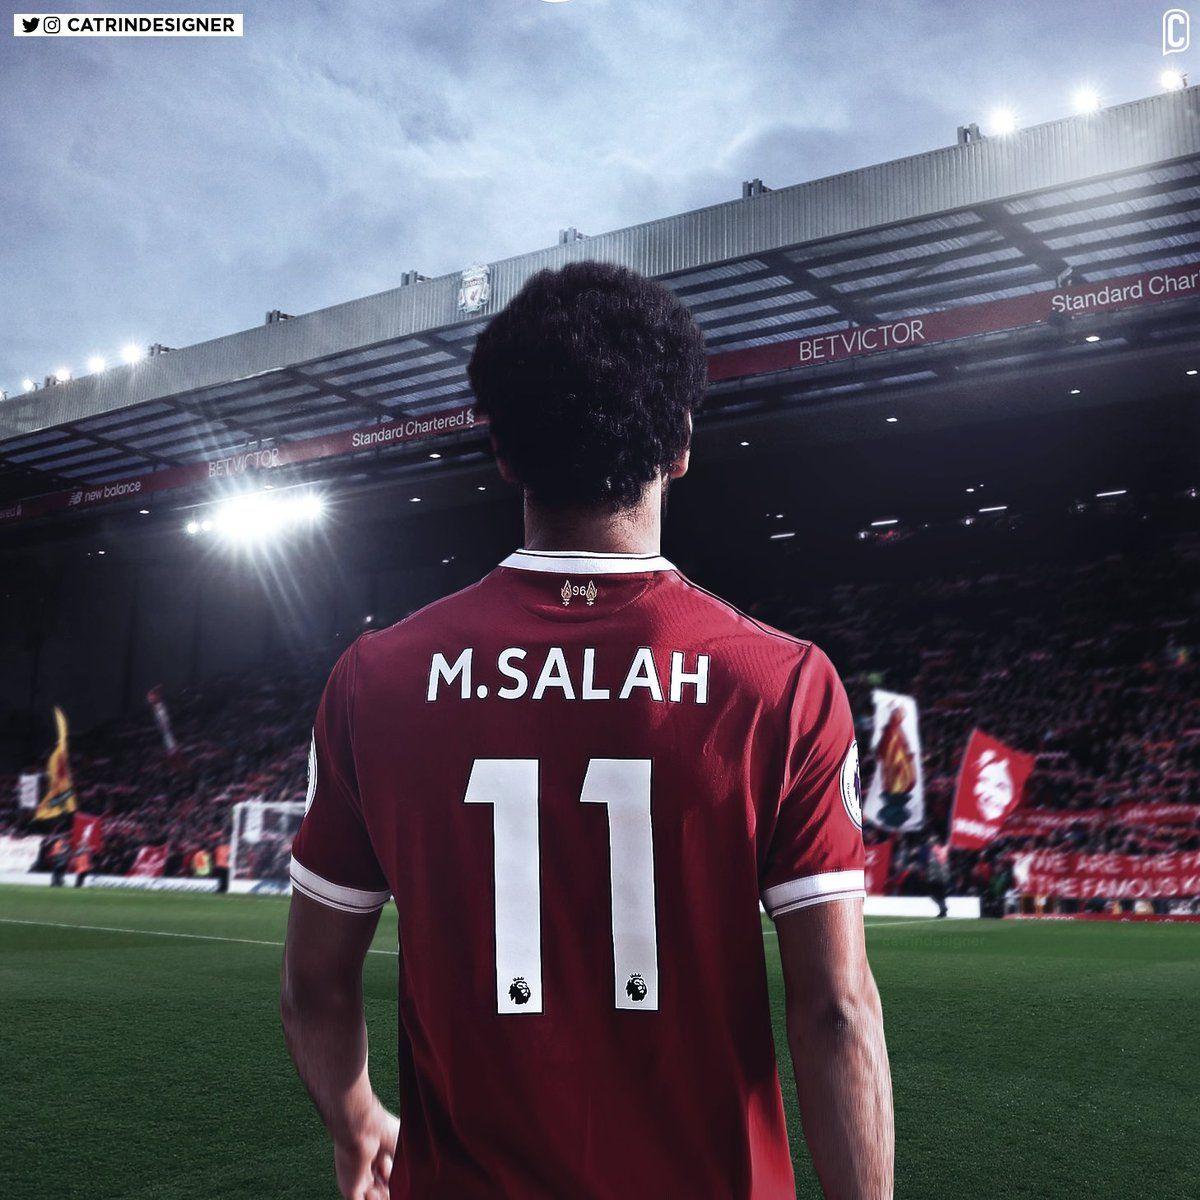 Catrin's new number Mohamed #Salah